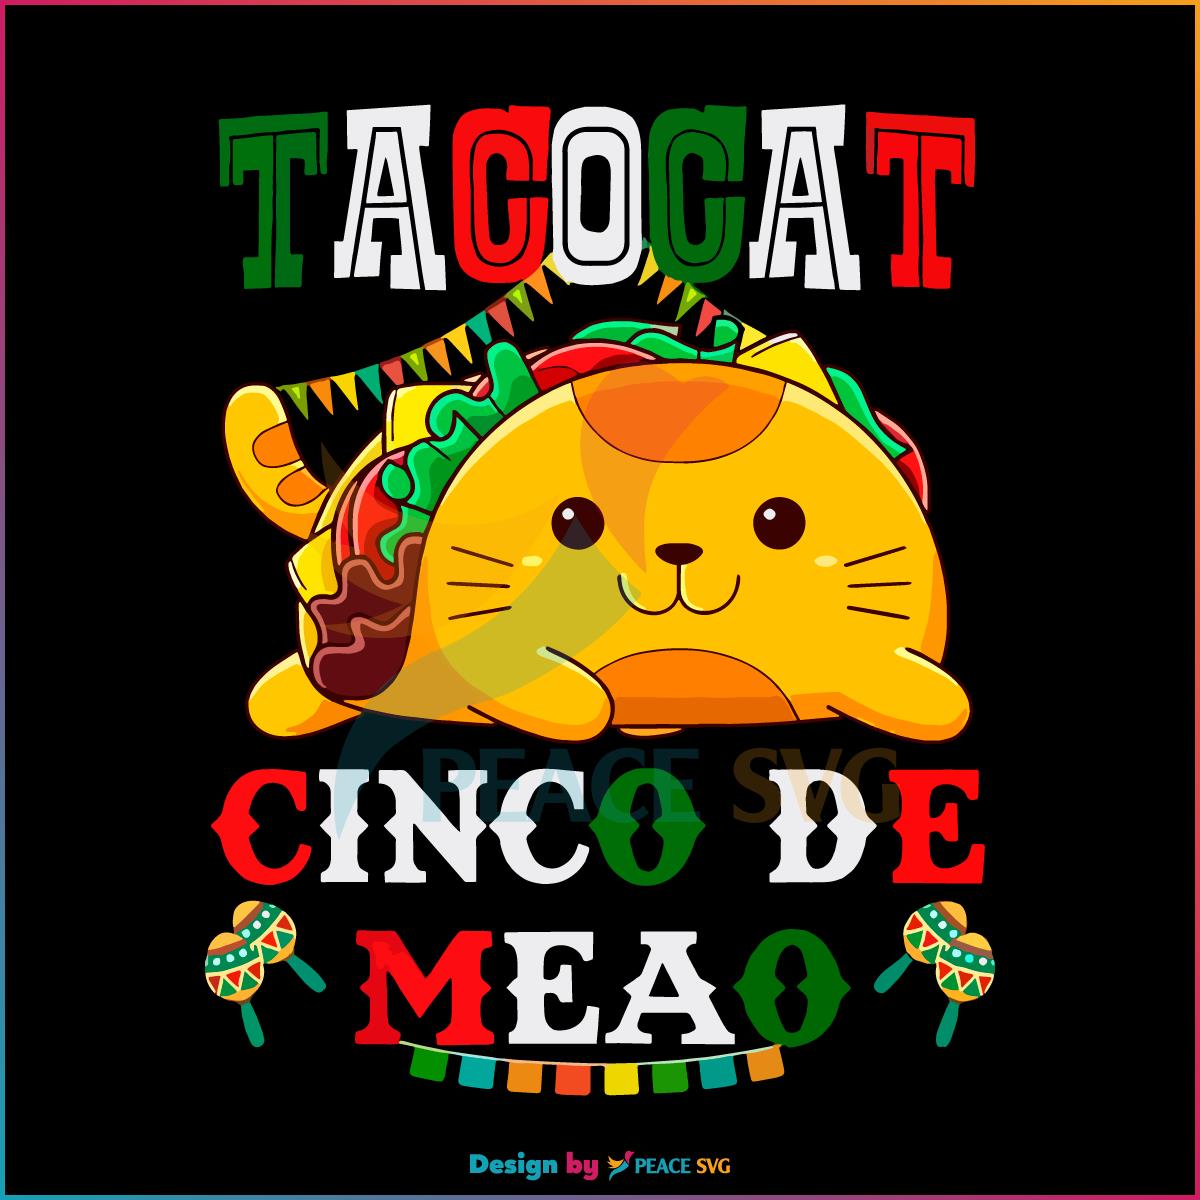 Tacocat Cinco De Meao Mexican Tacos Conco De Mayo SVG Holiday SVG